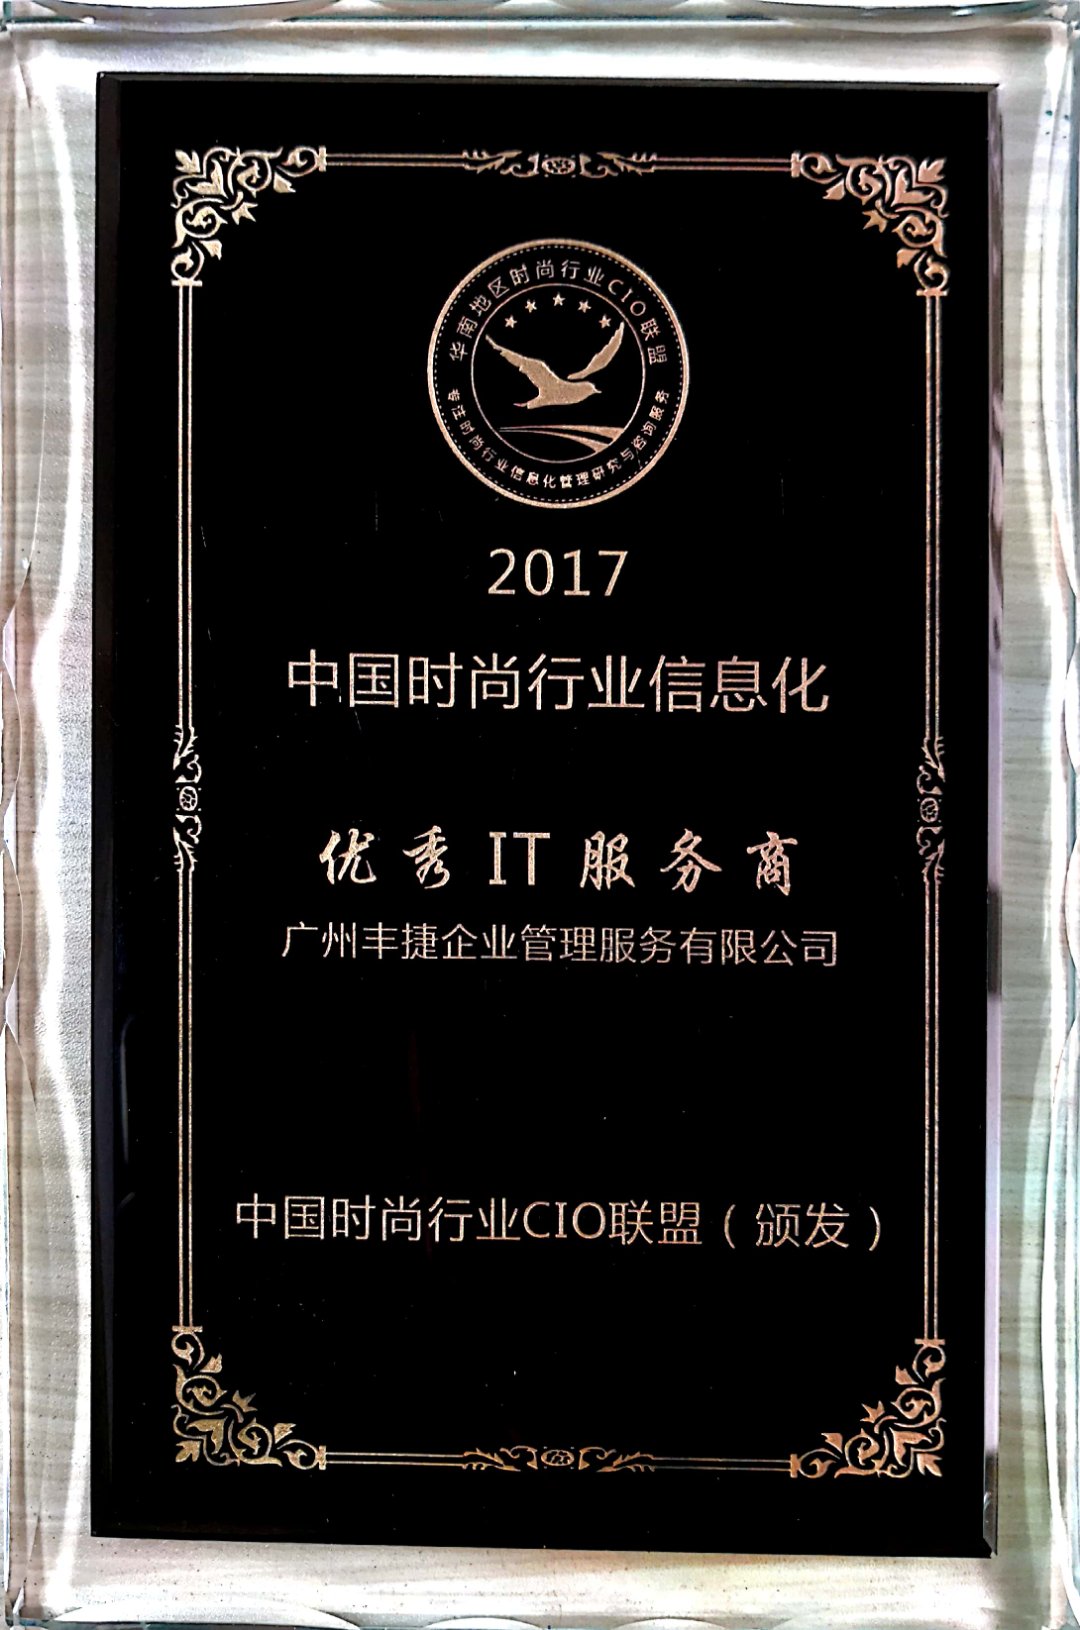 丰捷软件获颁中国时尚行业CIO联盟优秀IT服务商资质,广州丰捷企业管理服务有限公司